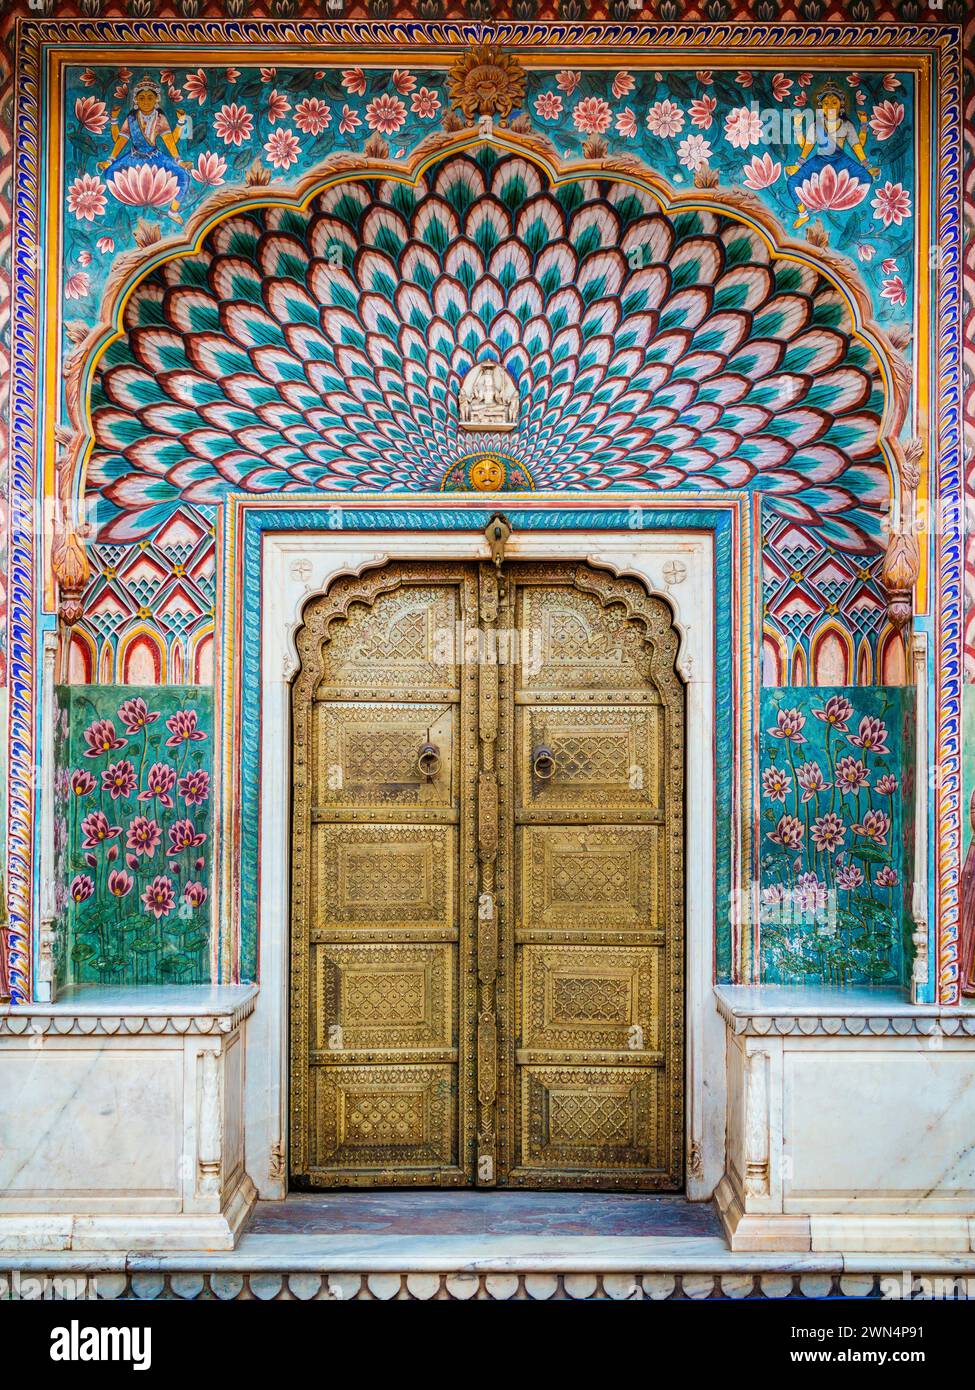 La porte colorée du Lotus au Palais de la ville de Jaipur au Rajasthan, en Inde. Banque D'Images